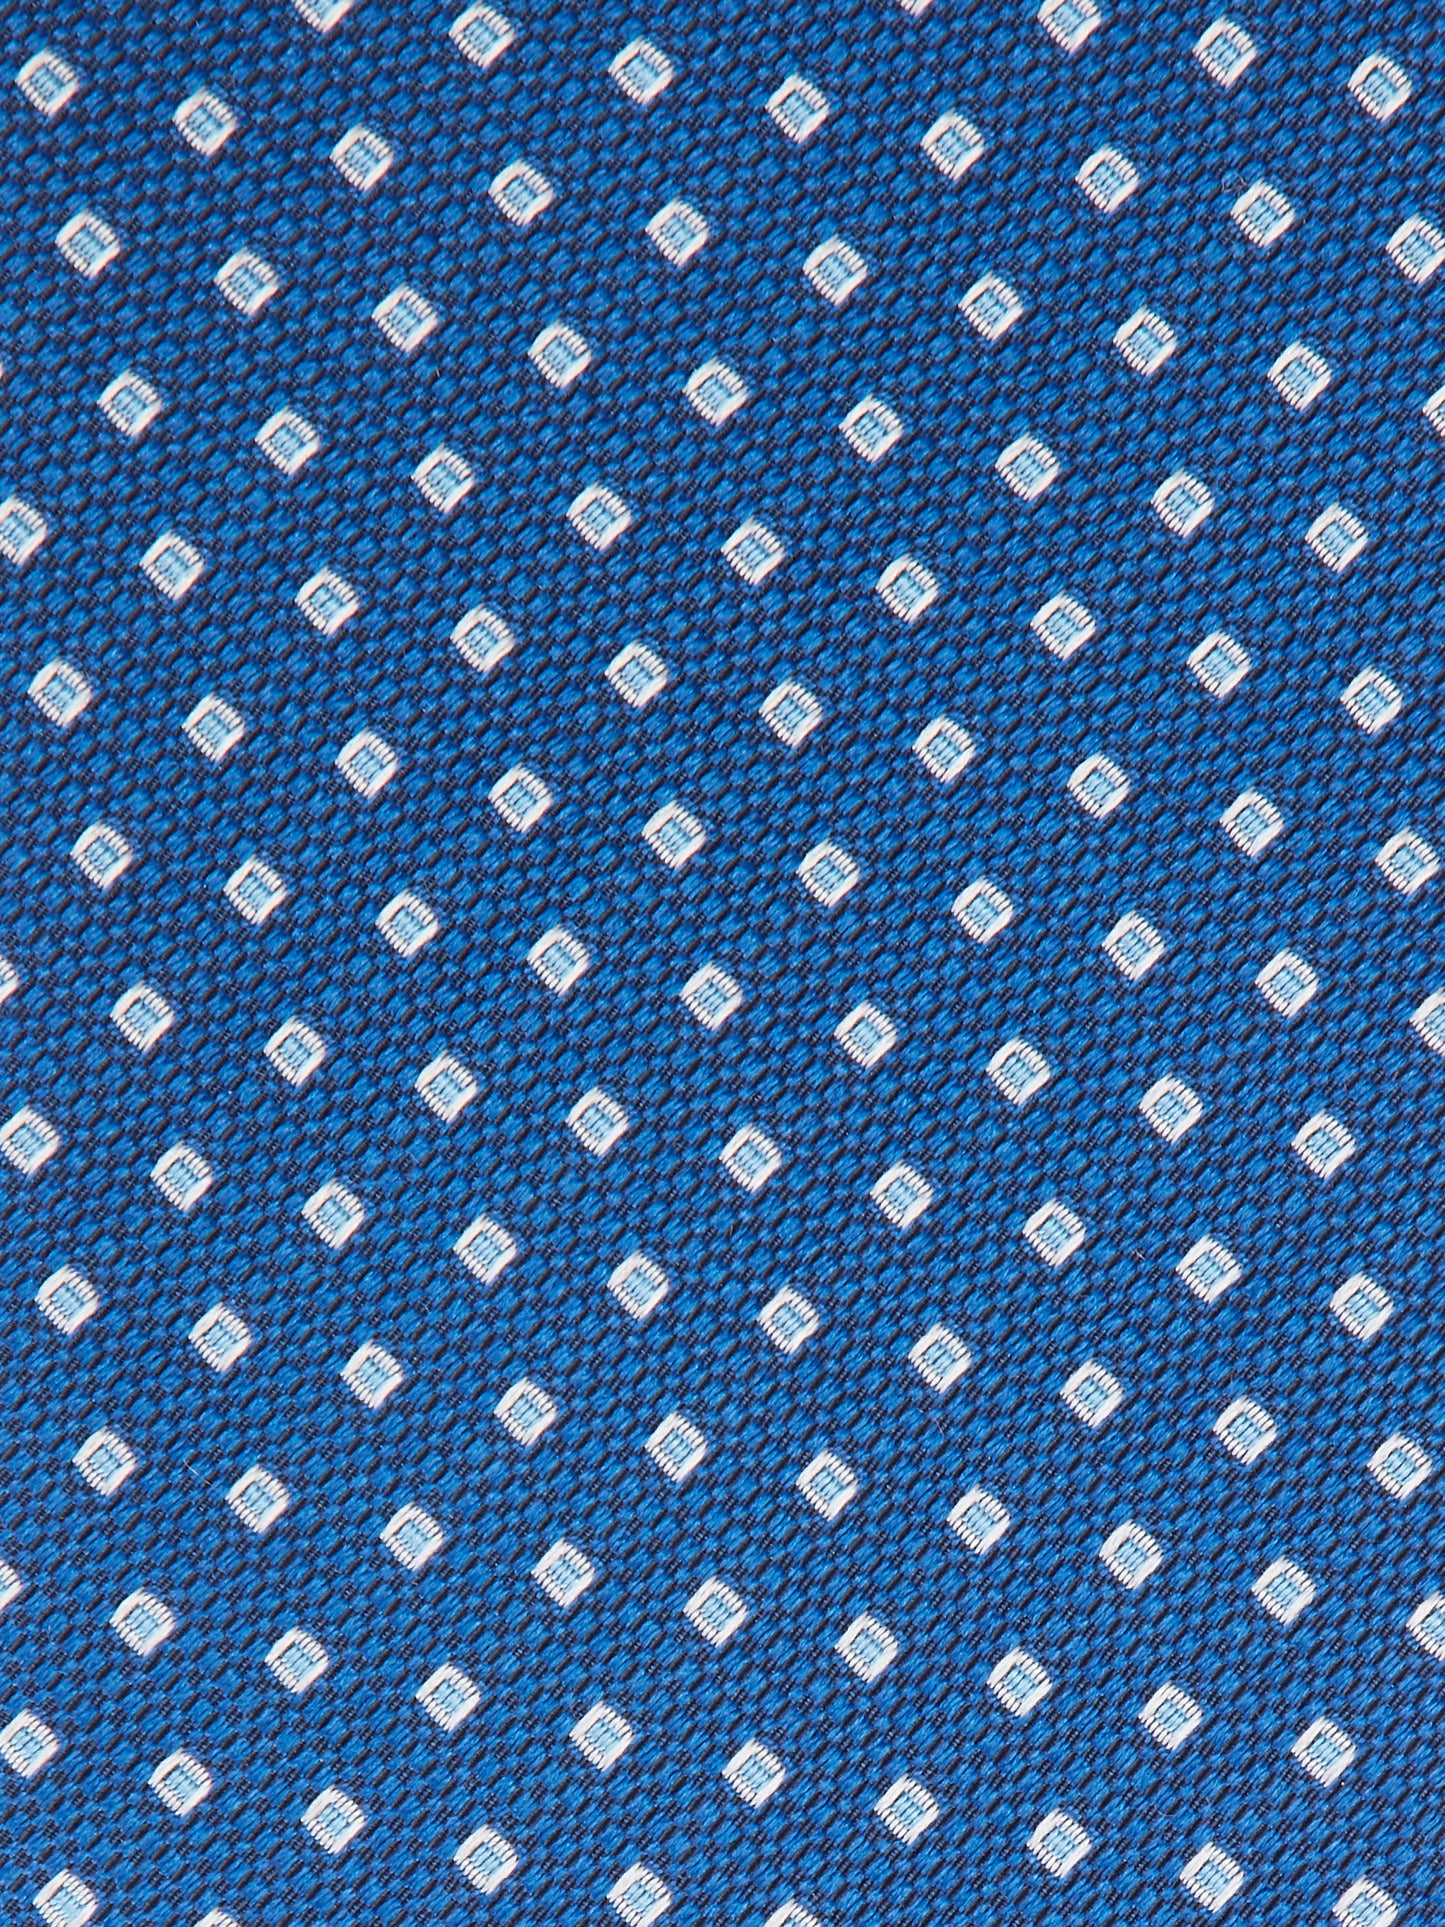 Square Dot Tie - Dark Blue